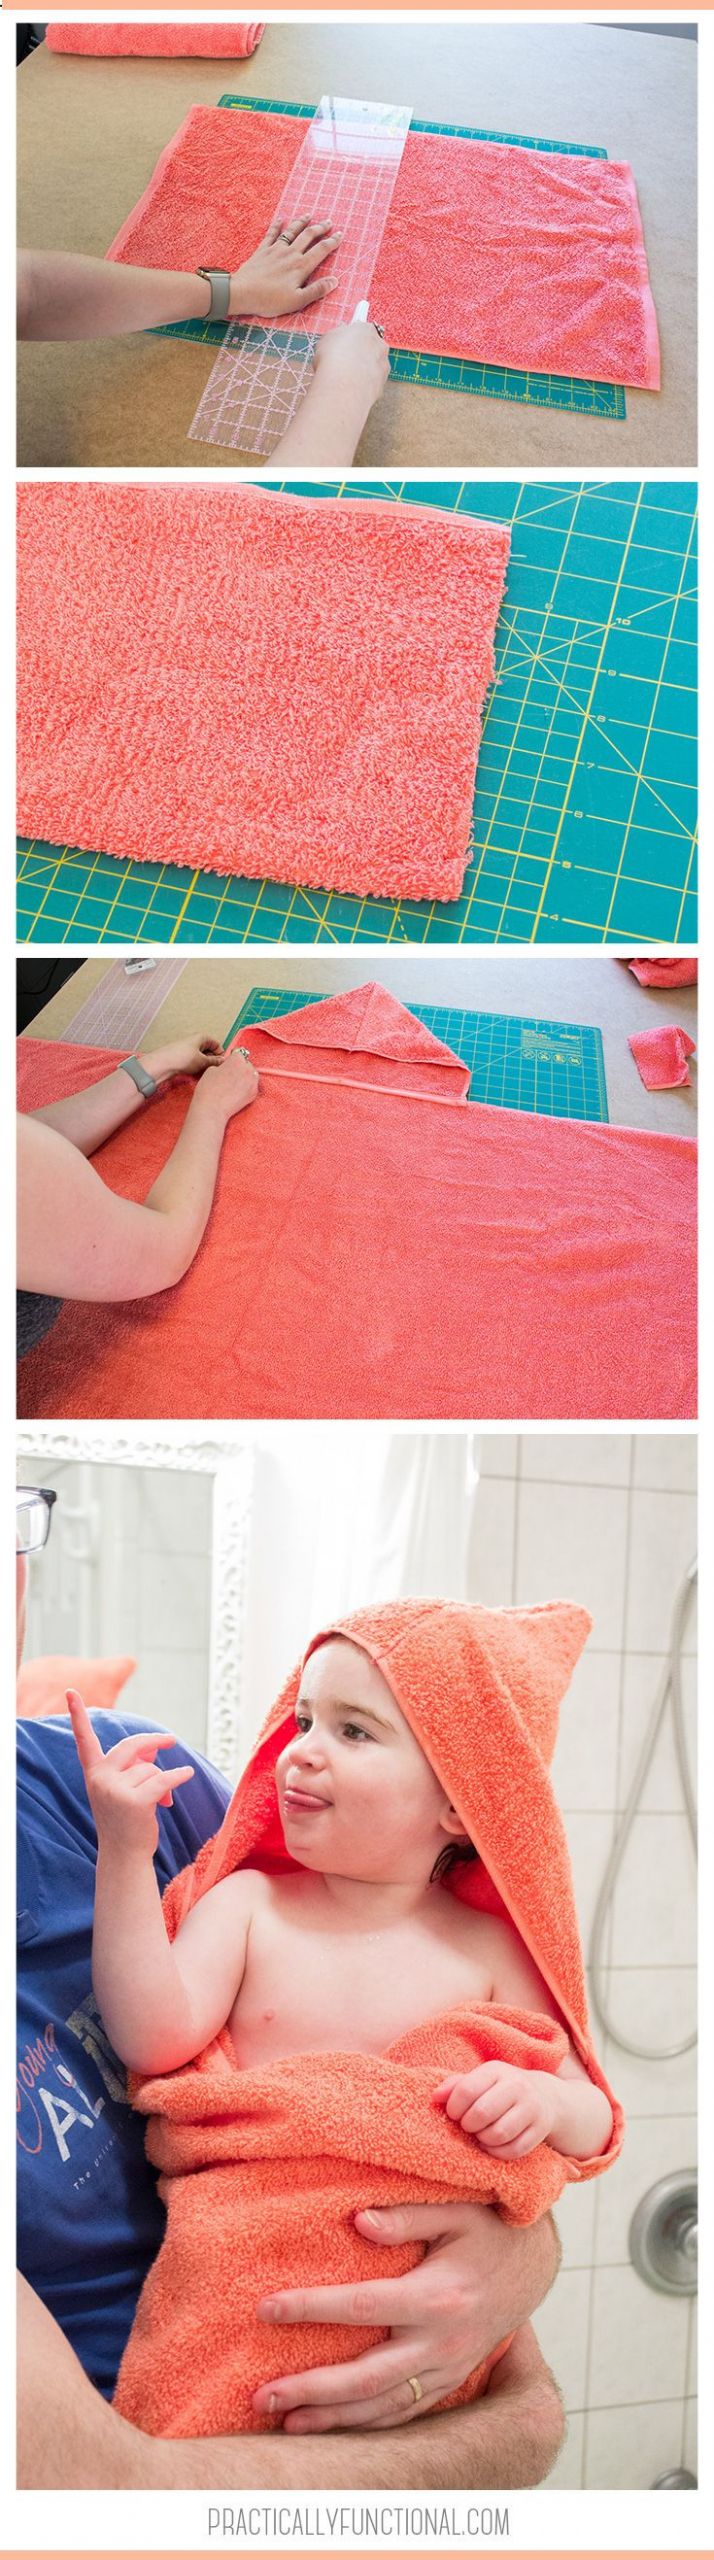 DIY Hooded Baby Towel
 Super Easy DIY Hooded Towel Tutorial